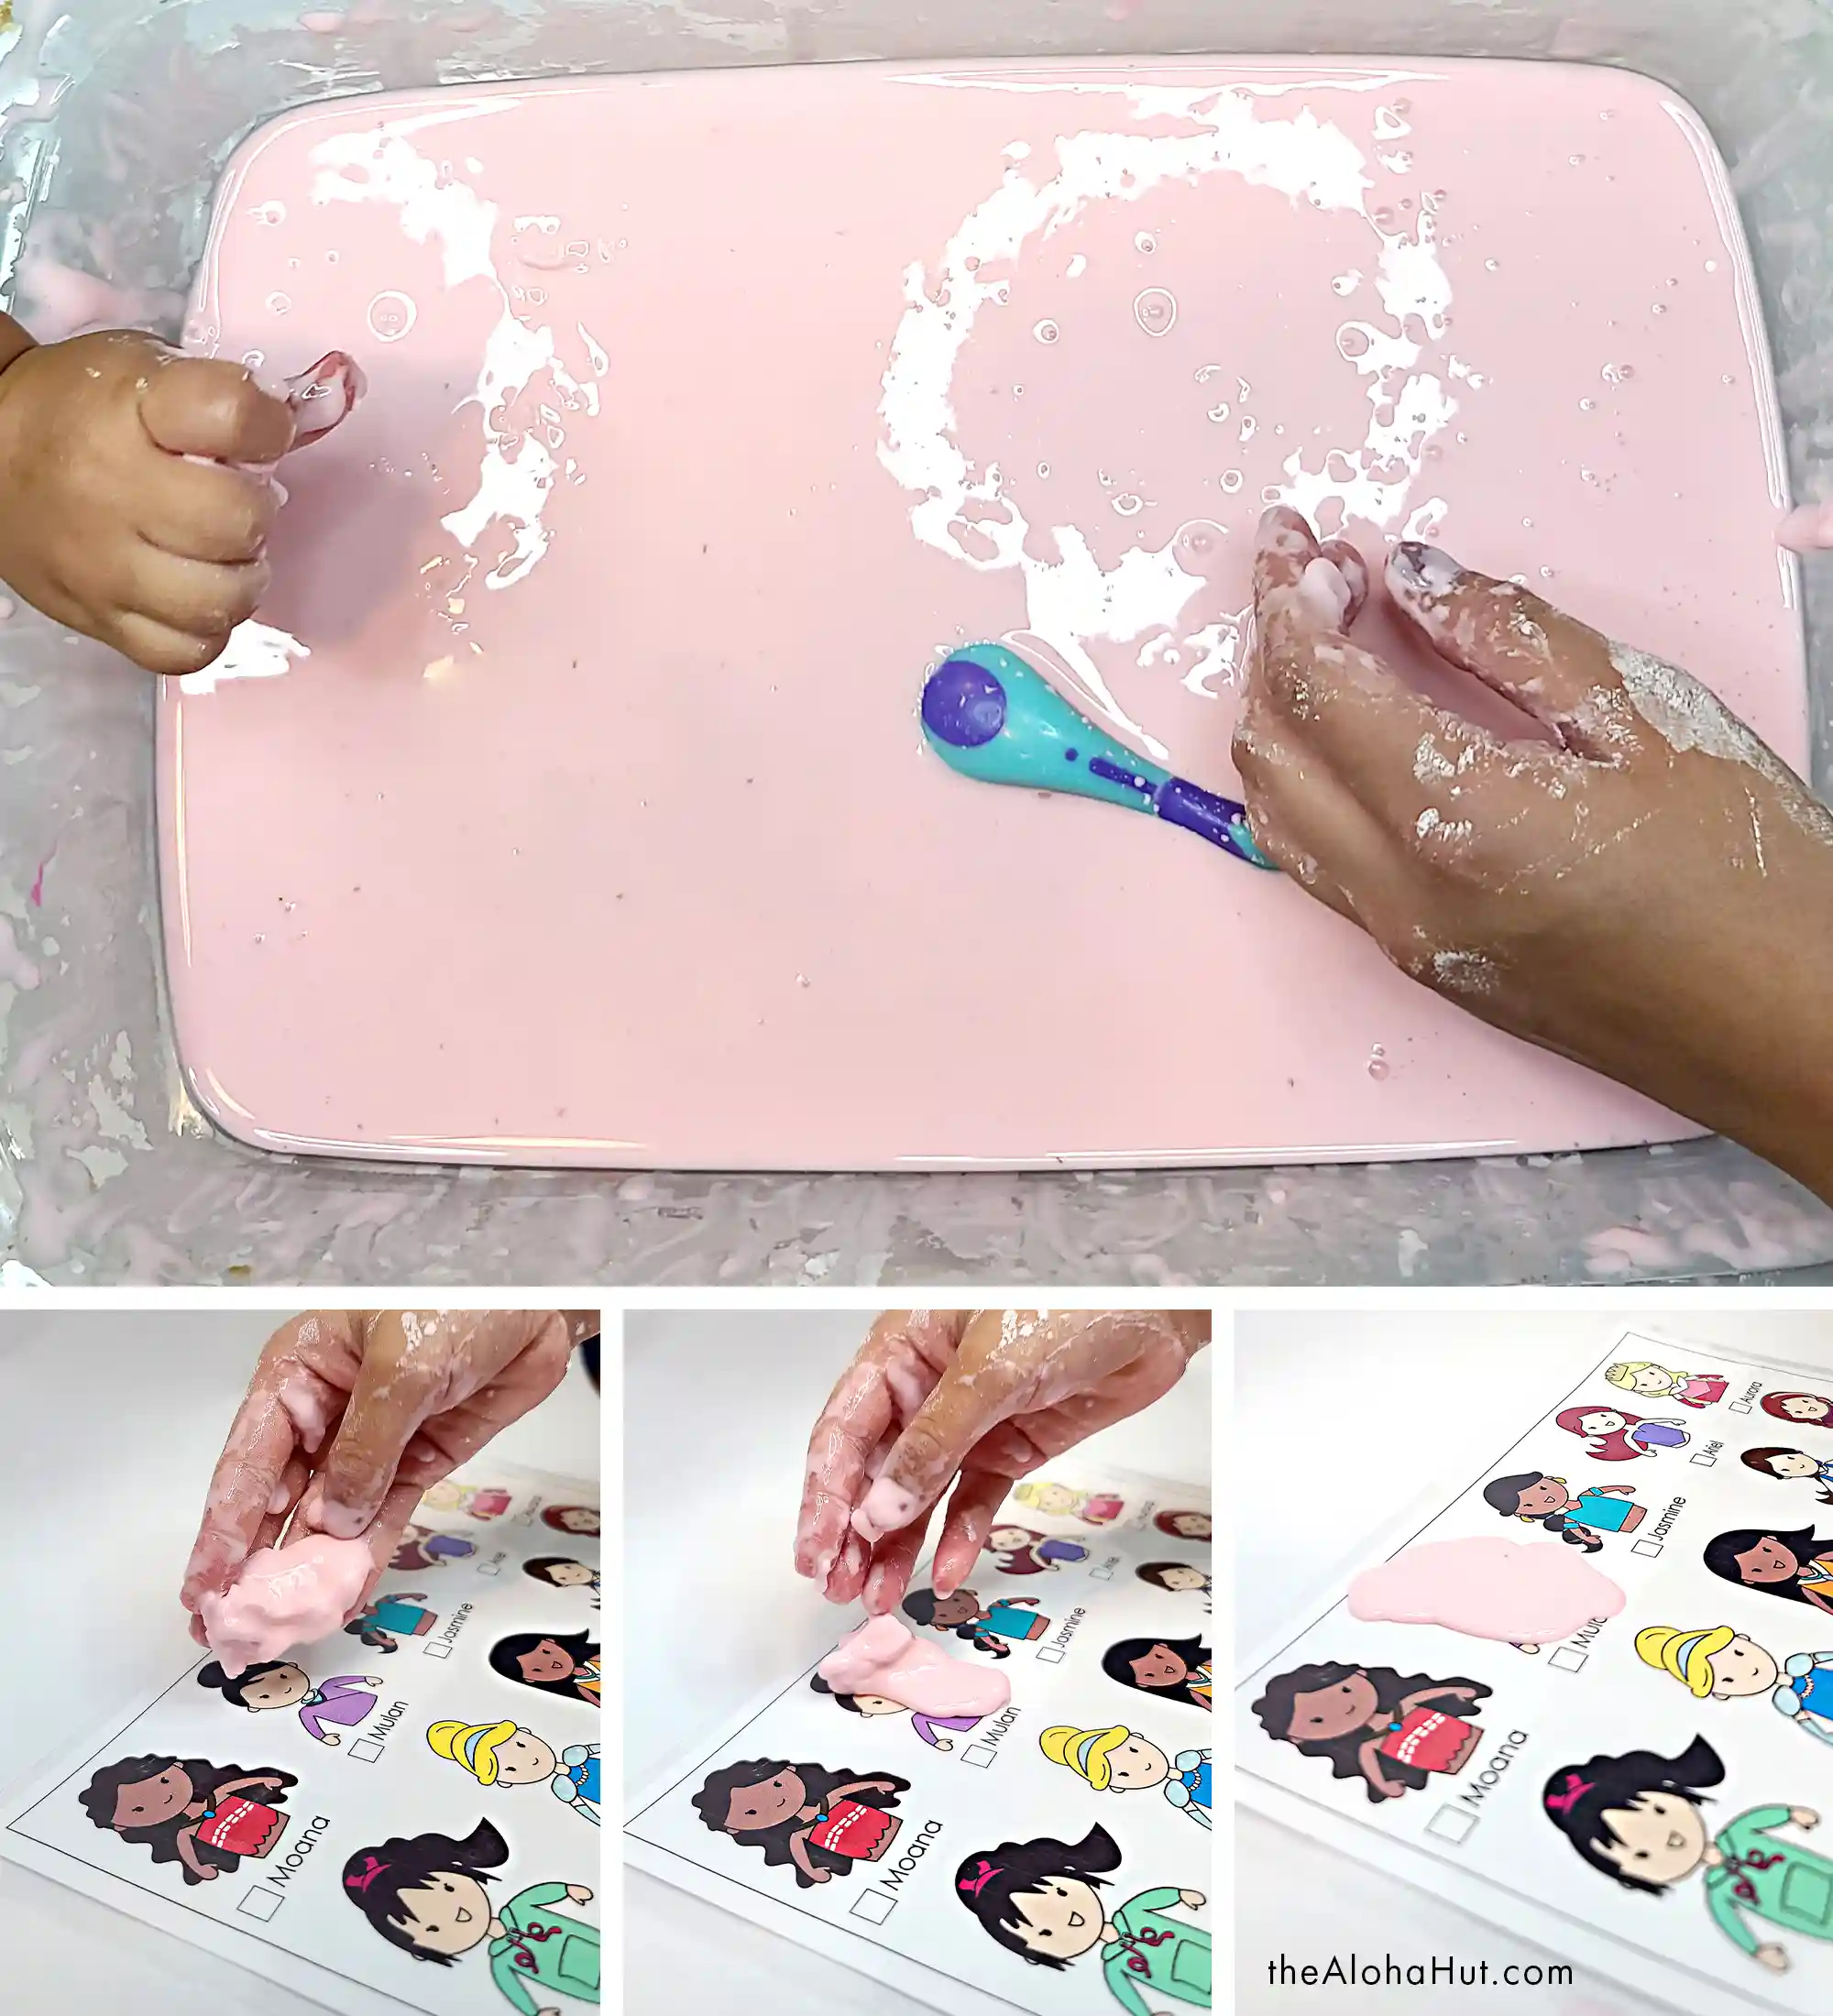 I Spy a Princess - Toddler Sensory Activity - Disney Princess Montessori - How to Make Ooblek